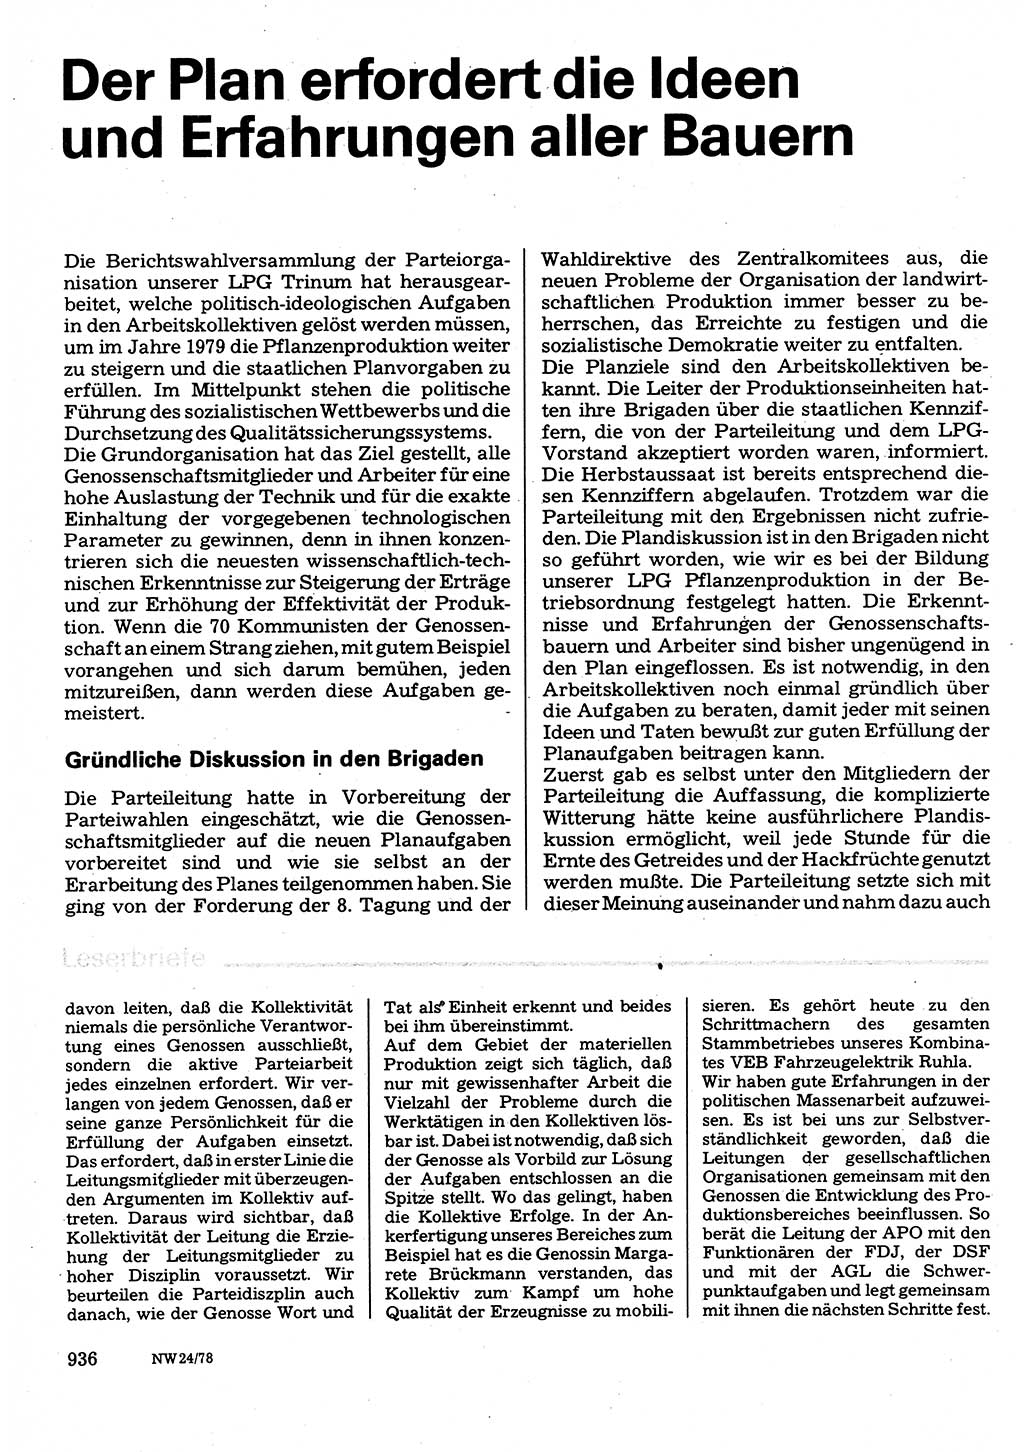 Neuer Weg (NW), Organ des Zentralkomitees (ZK) der SED (Sozialistische Einheitspartei Deutschlands) für Fragen des Parteilebens, 33. Jahrgang [Deutsche Demokratische Republik (DDR)] 1978, Seite 936 (NW ZK SED DDR 1978, S. 936)